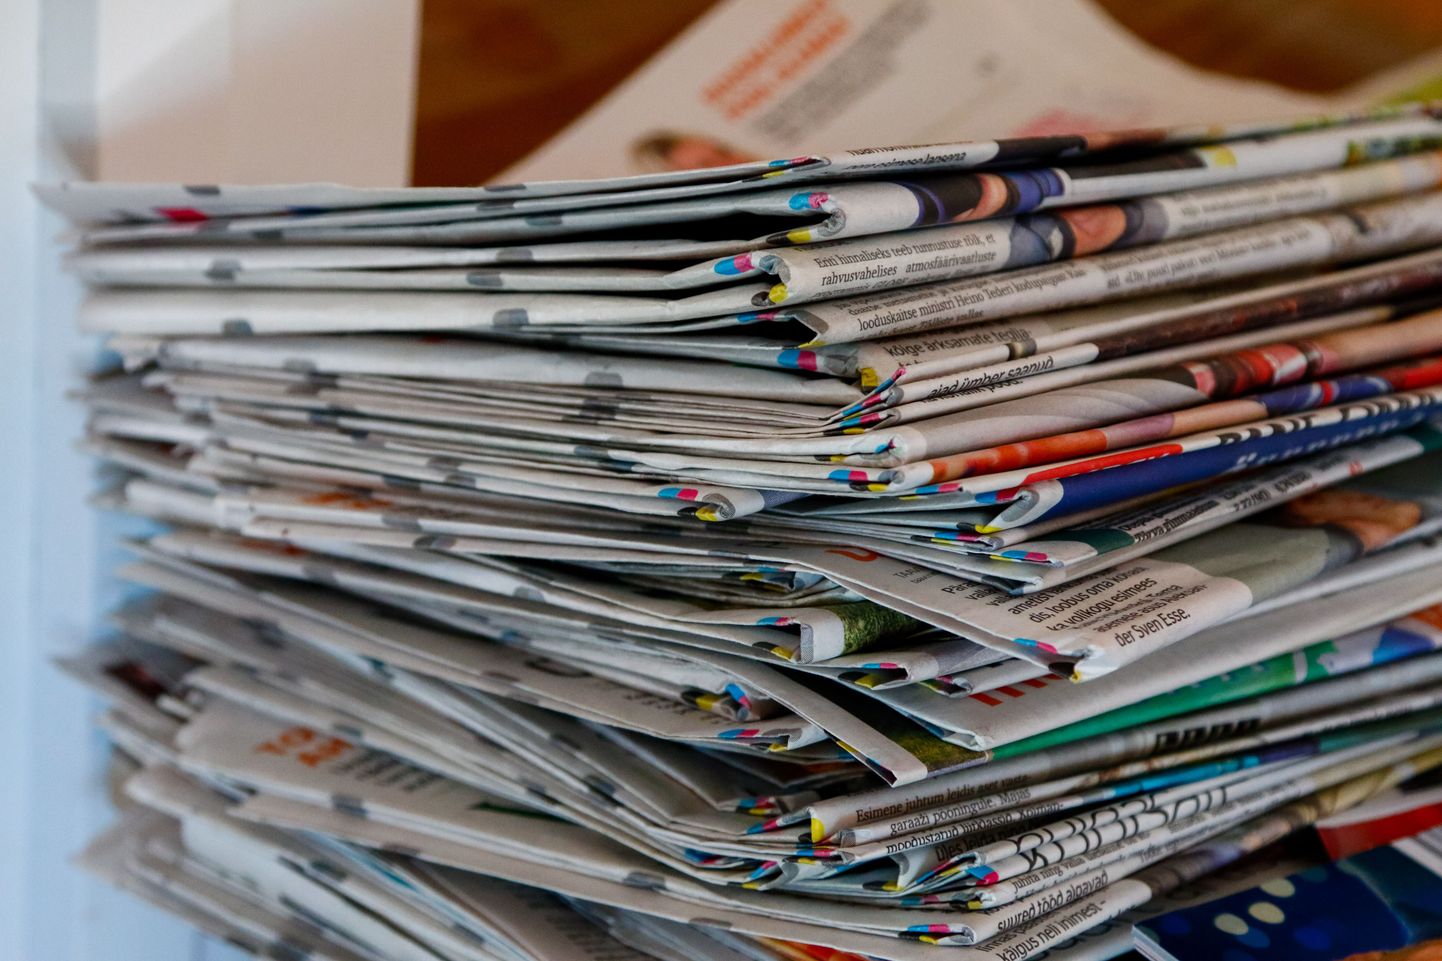 Kui paberväljaannetele kehtib praegu 9 protsendiline käibemaks, siis online ajakirjandusel on see endiselt 20 protsenti. See peab muutuma, leiab Eesti Ajalehtede Liit.